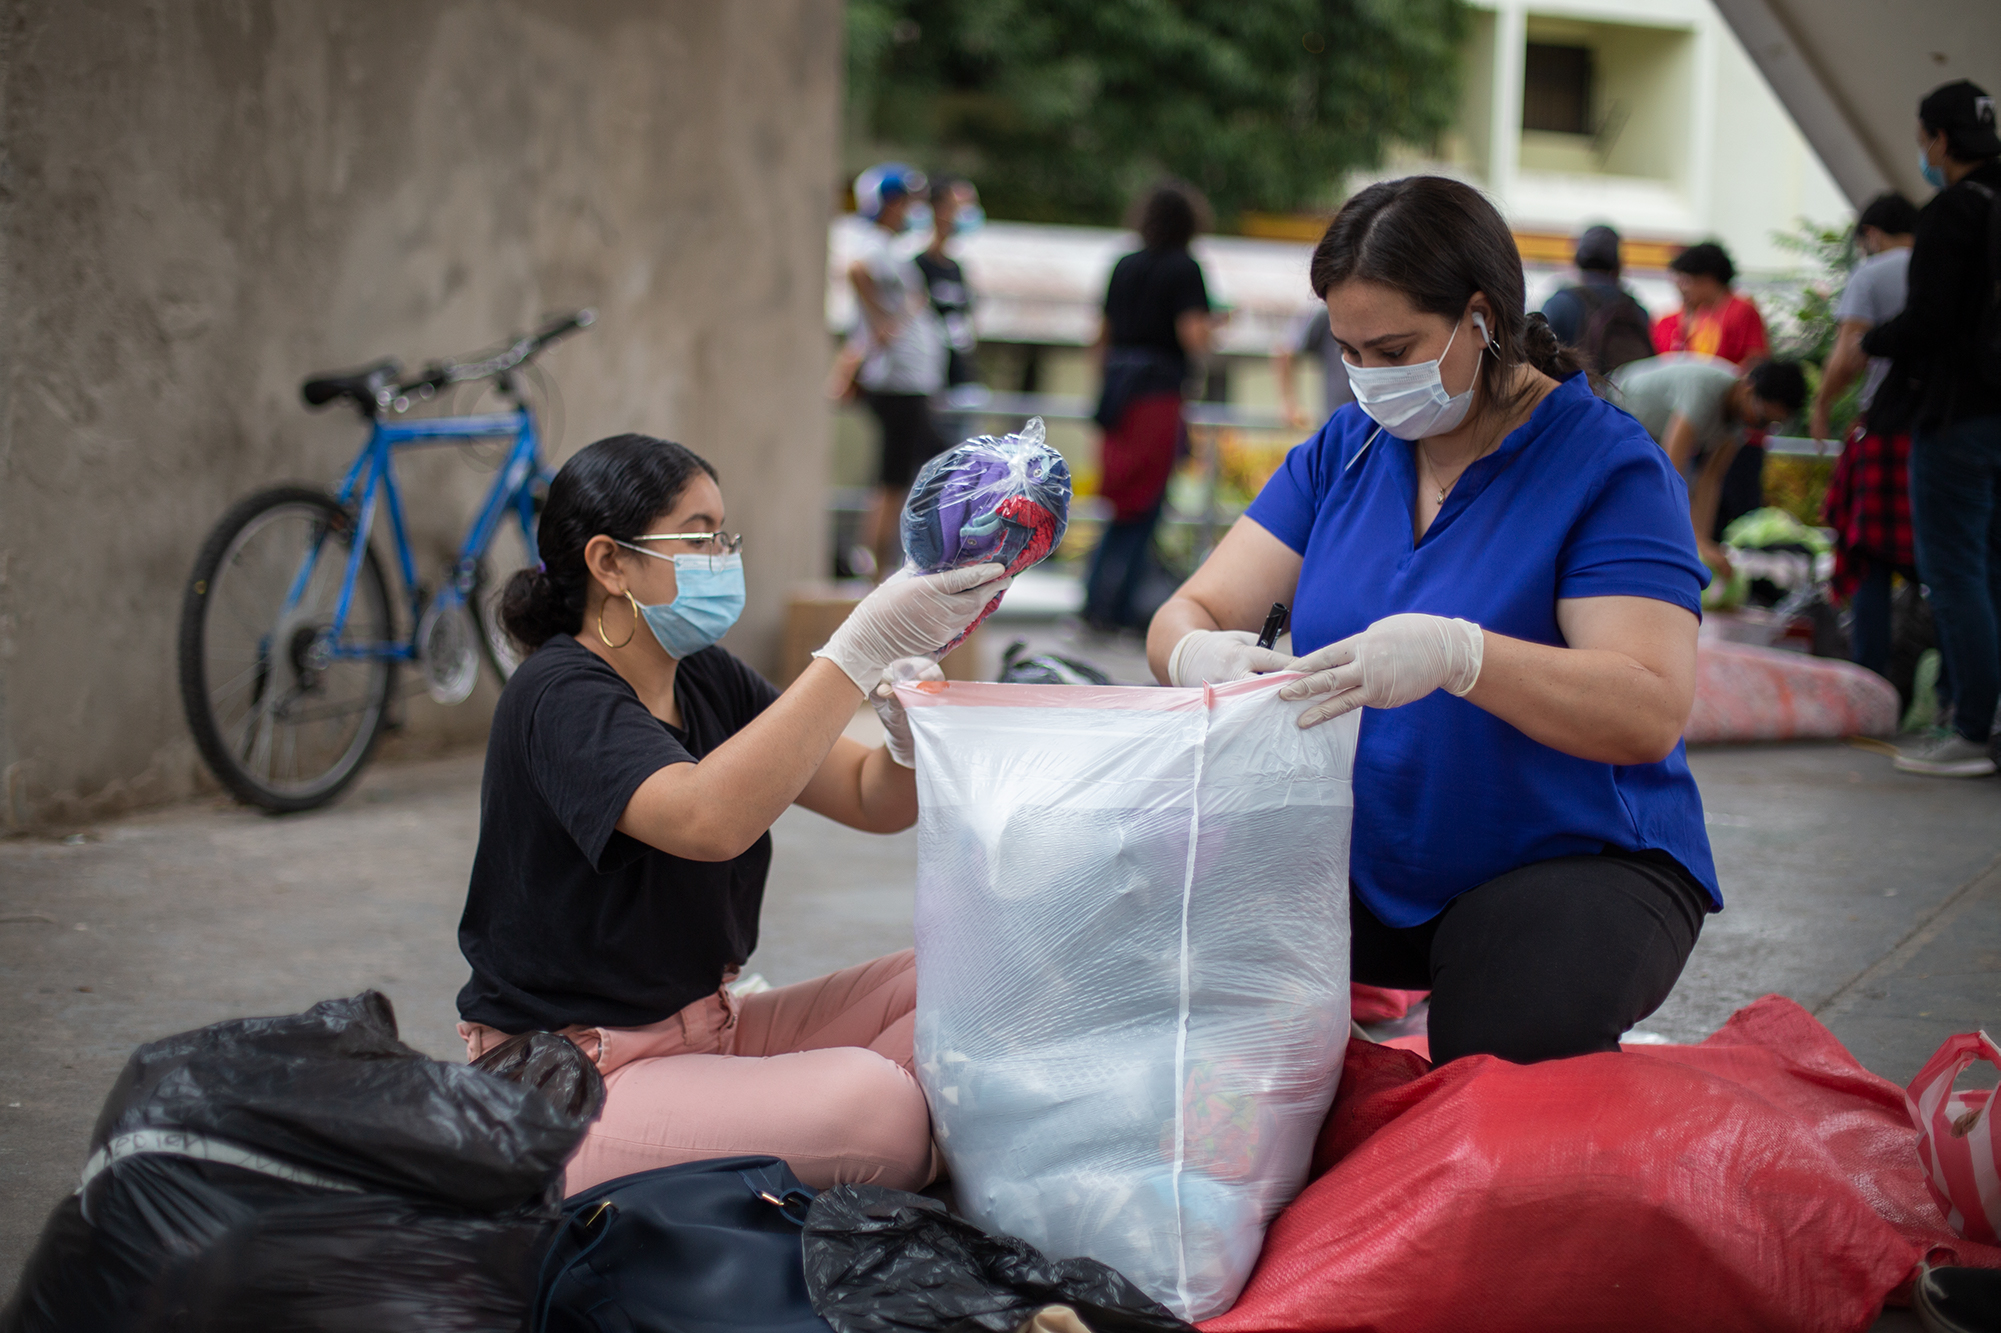 Dos jóvenes seleccionan y ordenan ropa para ser enviada a las zonas afectadas por las inundaciones provocadas por la tormenta tropical Eta. Tegucigalpa, 7 de noviembre de 2020. Foto: Martín Cálix.